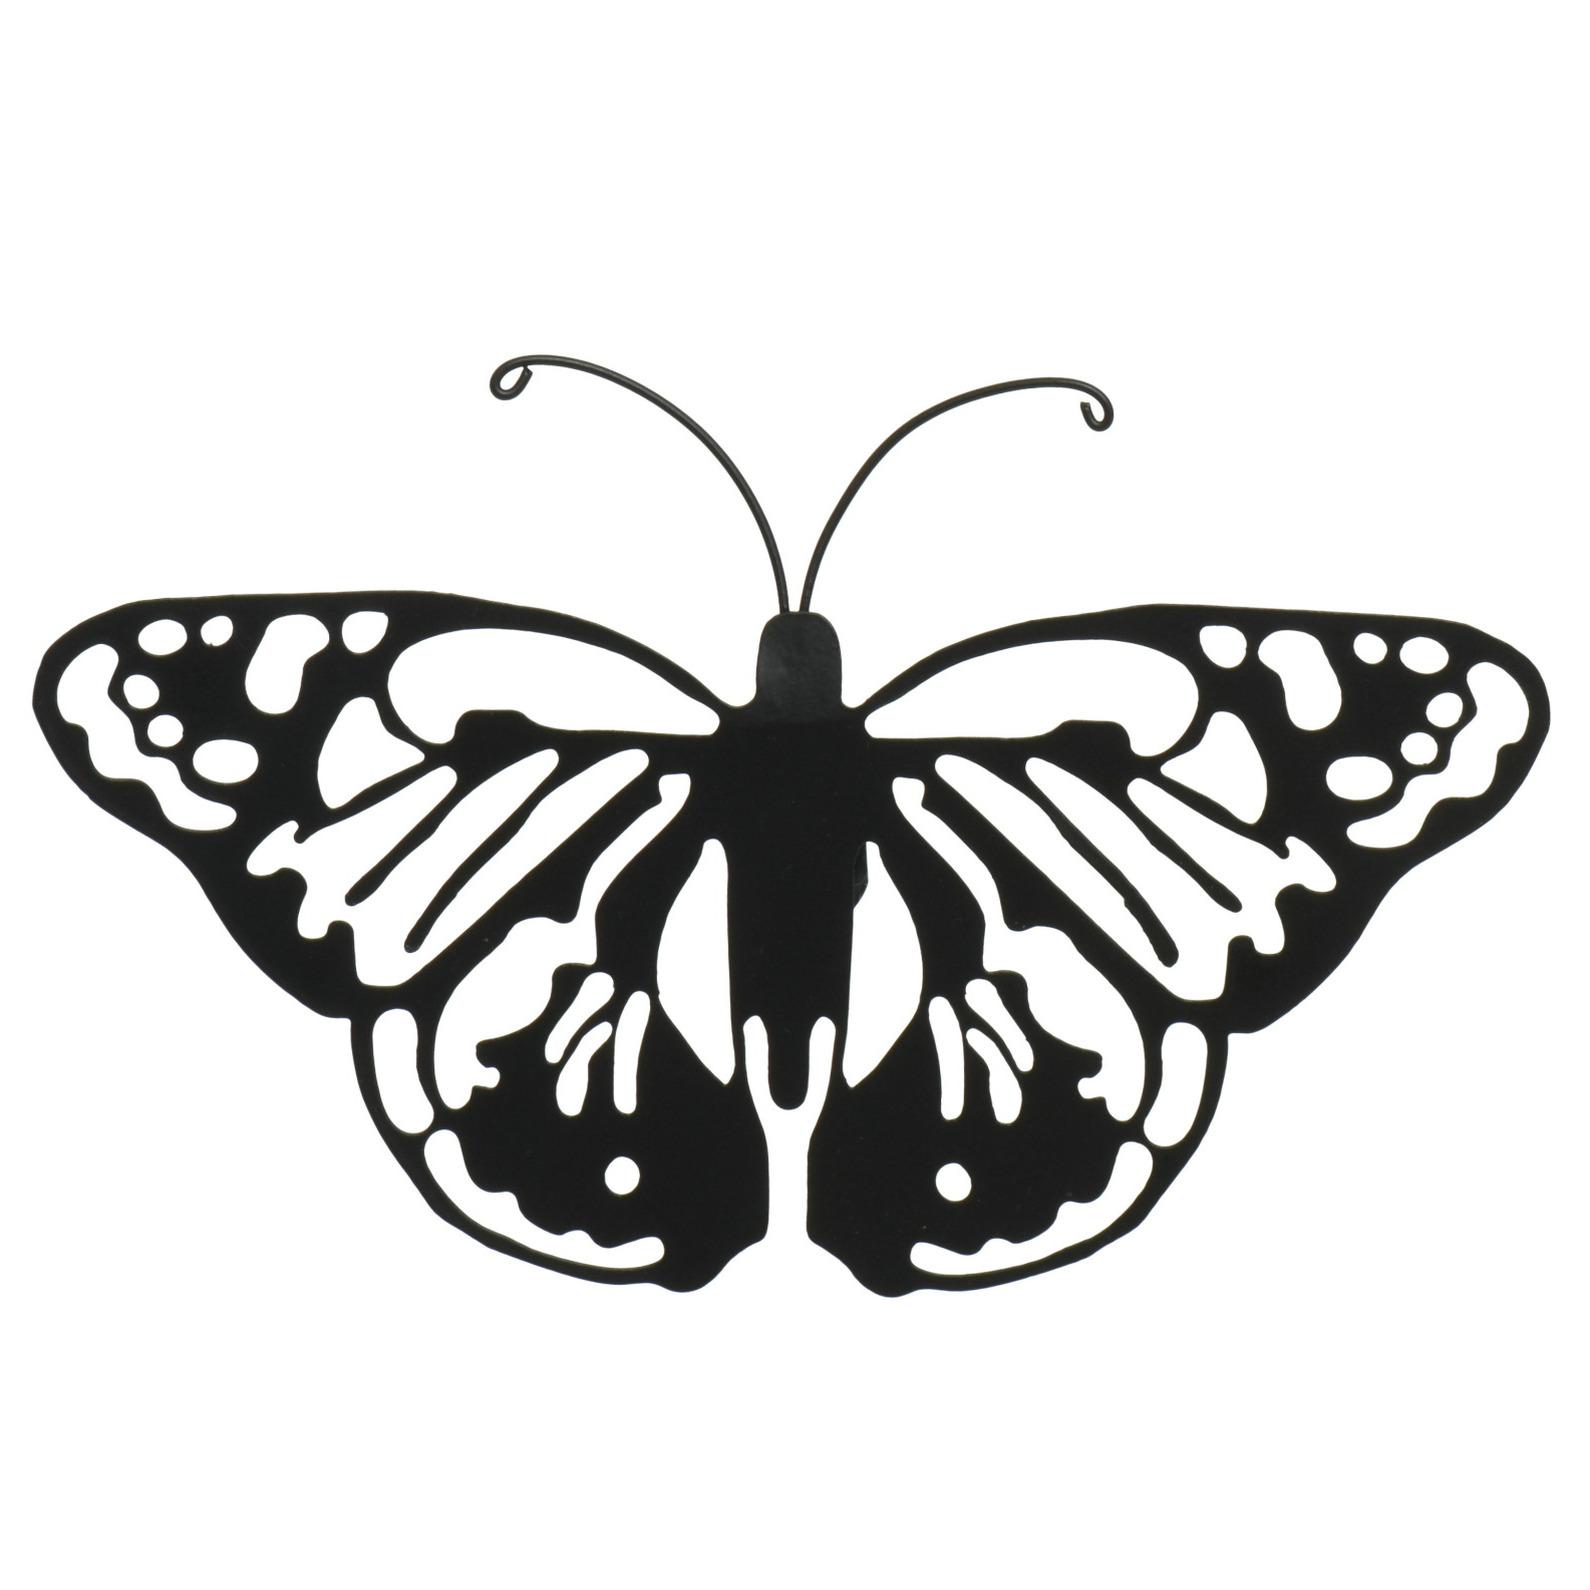 Tuin wanddecoratie vlinder metaal zwart 17 x 12 cm